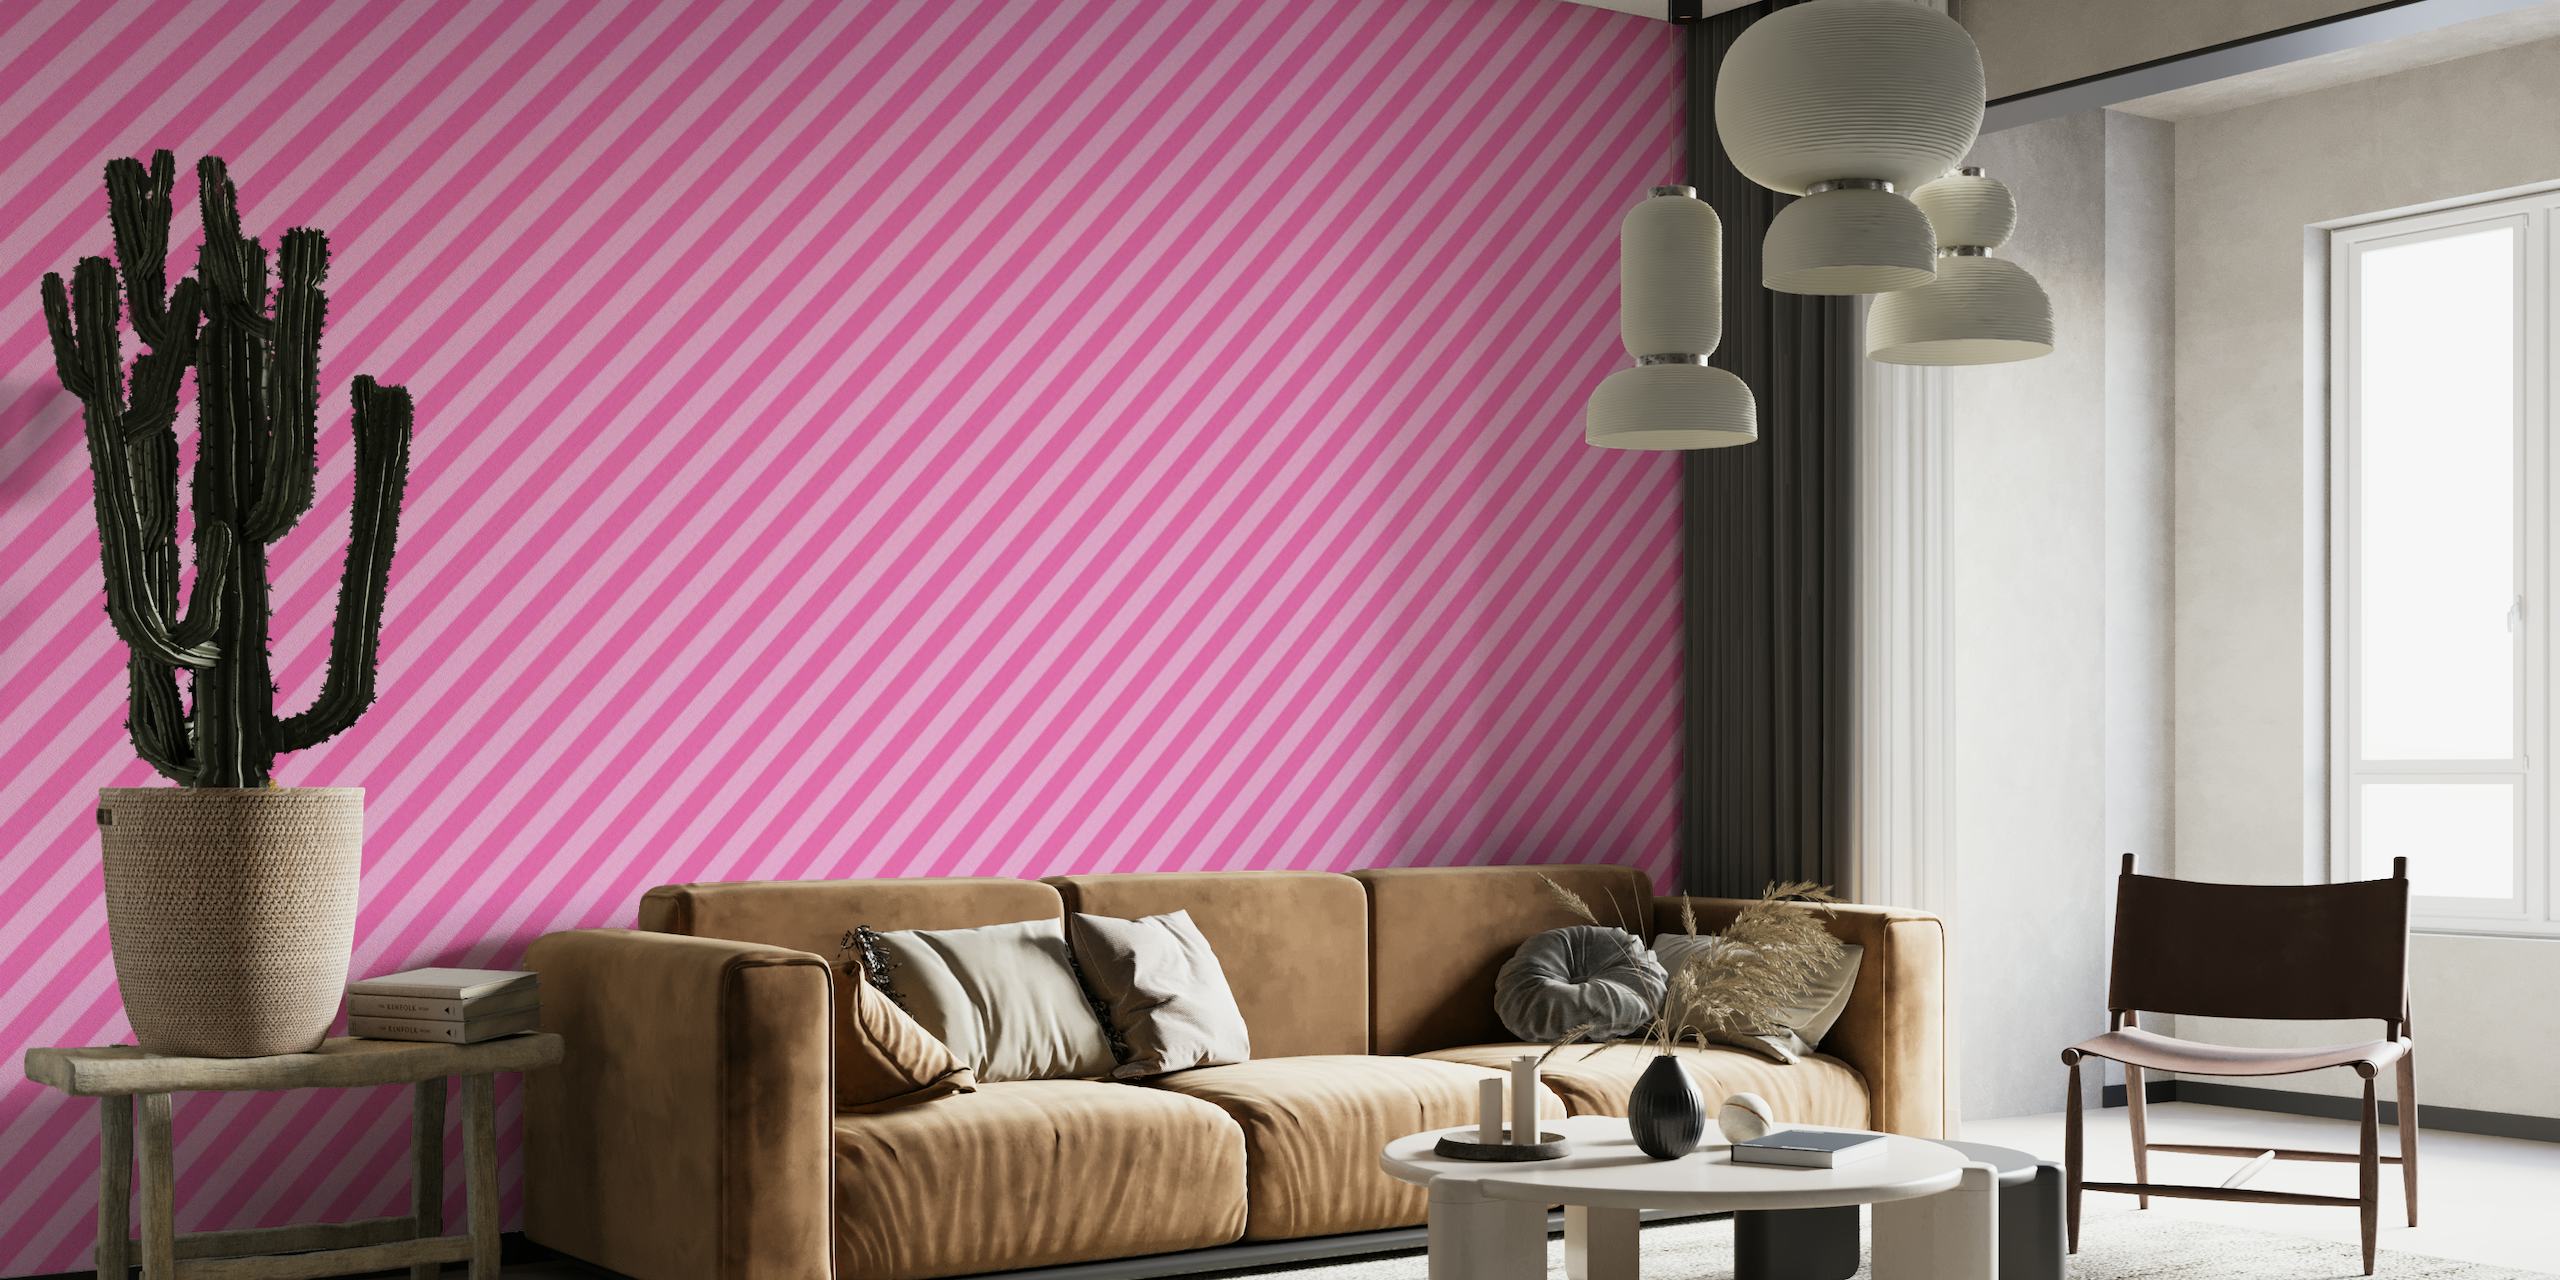 Papier peint mural à rayures diagonales rose vif et rose tendre